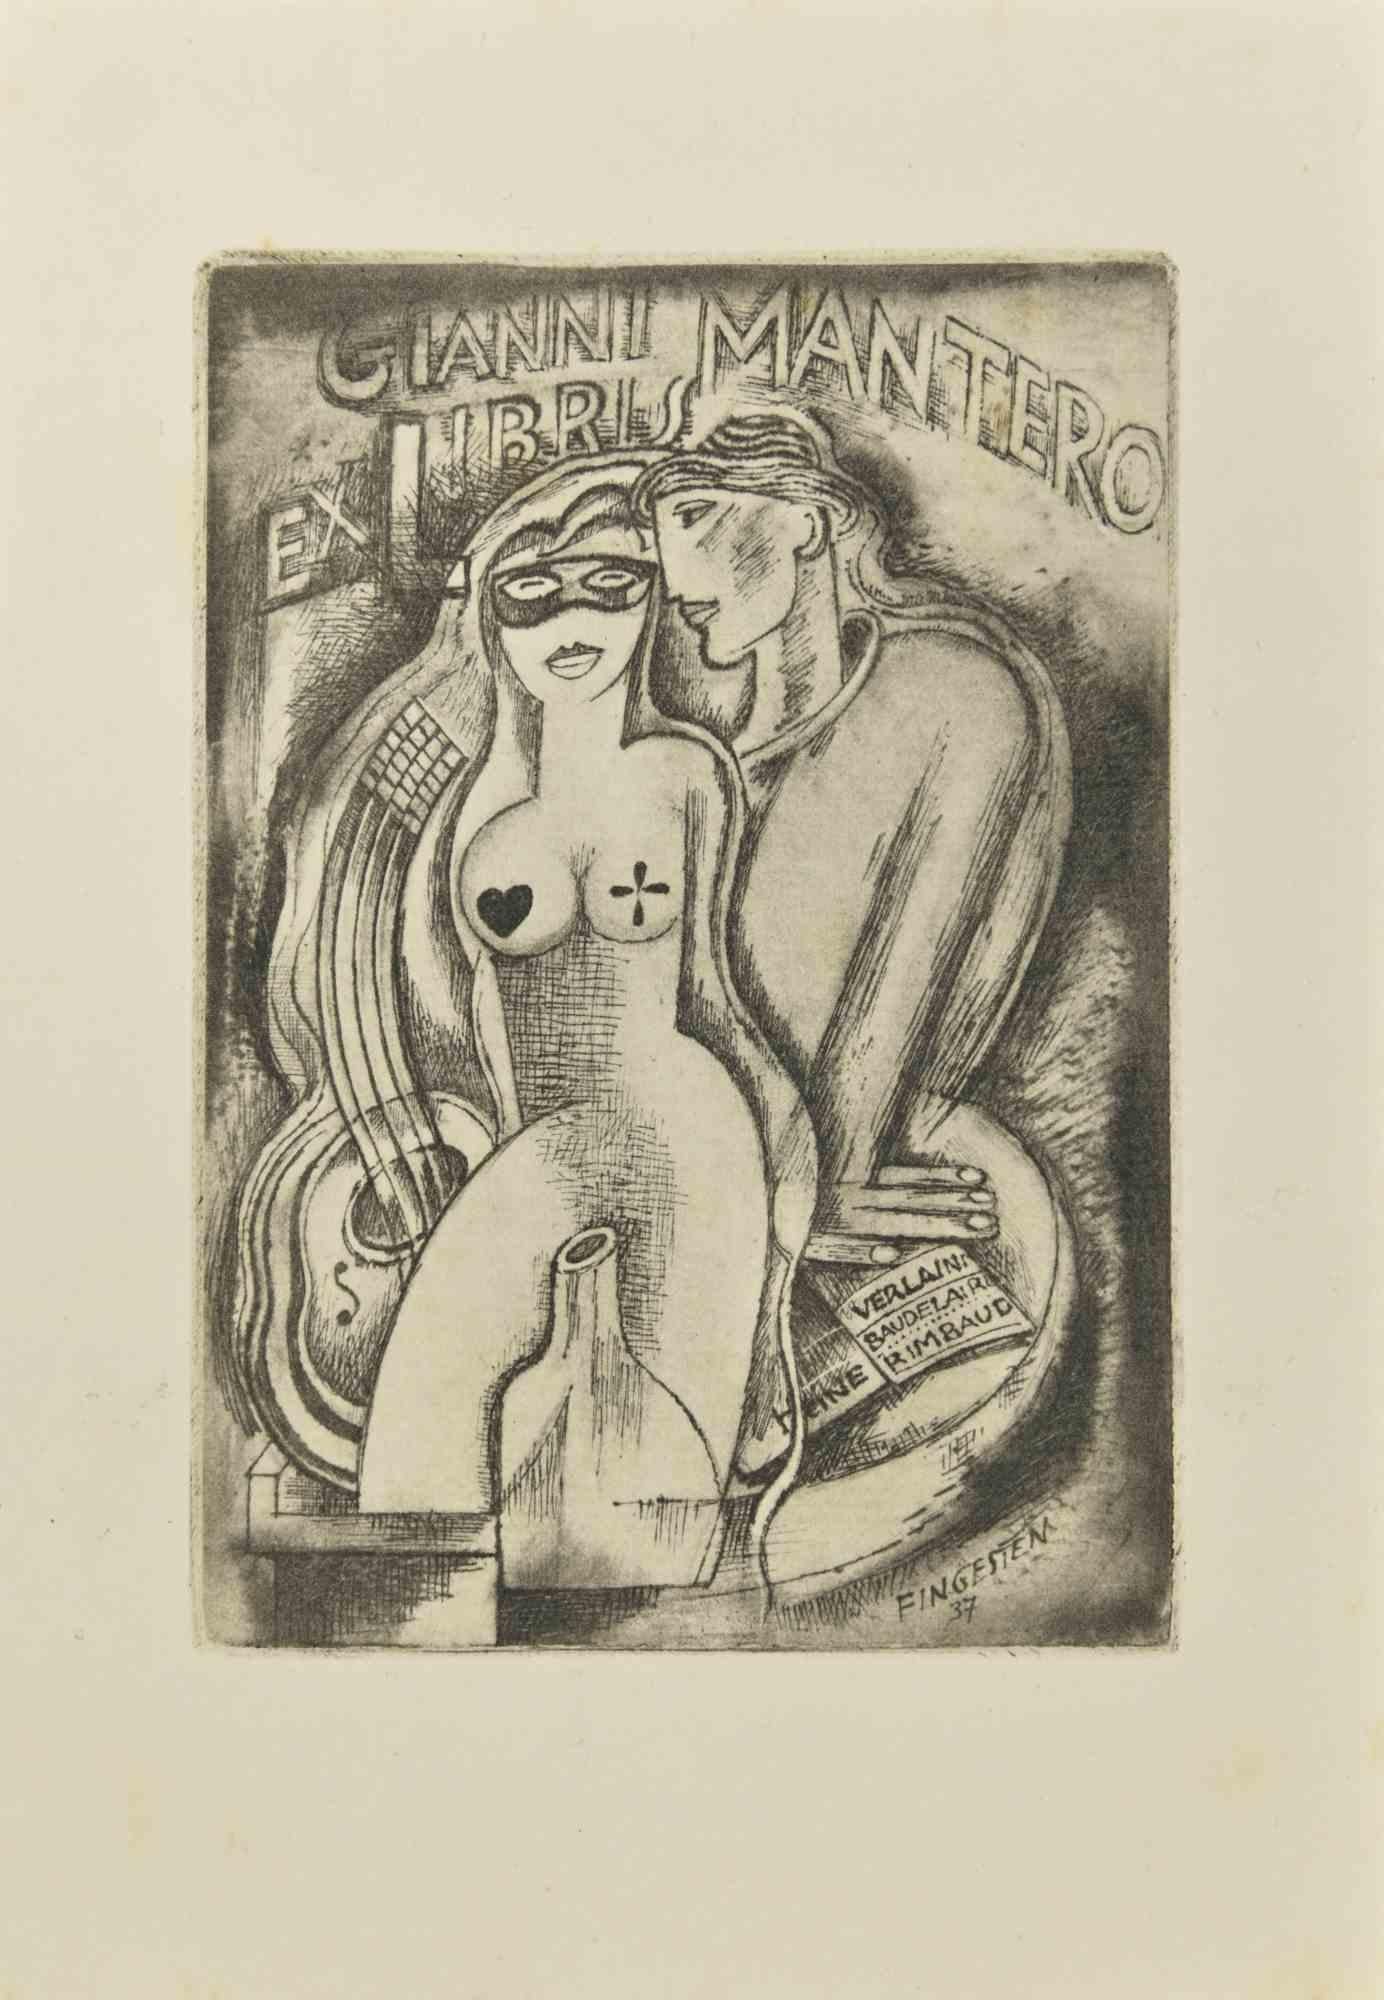 Ex Libris - Gianni Mantero - Etching by Michel Fingesten - 1937